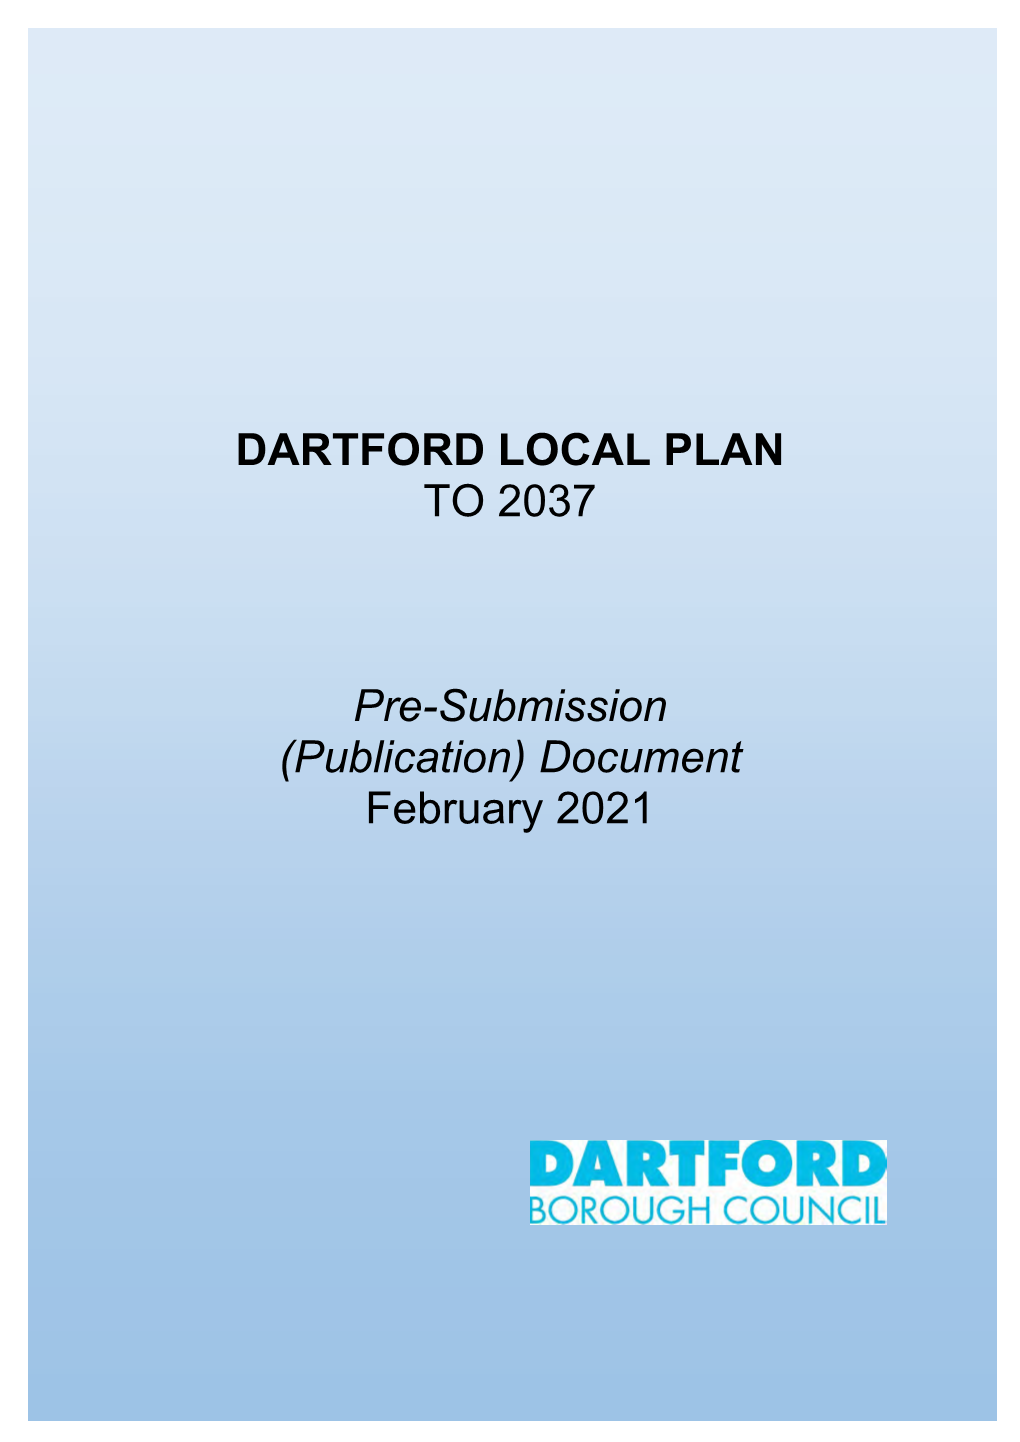 Dartford Local Plan to 2037